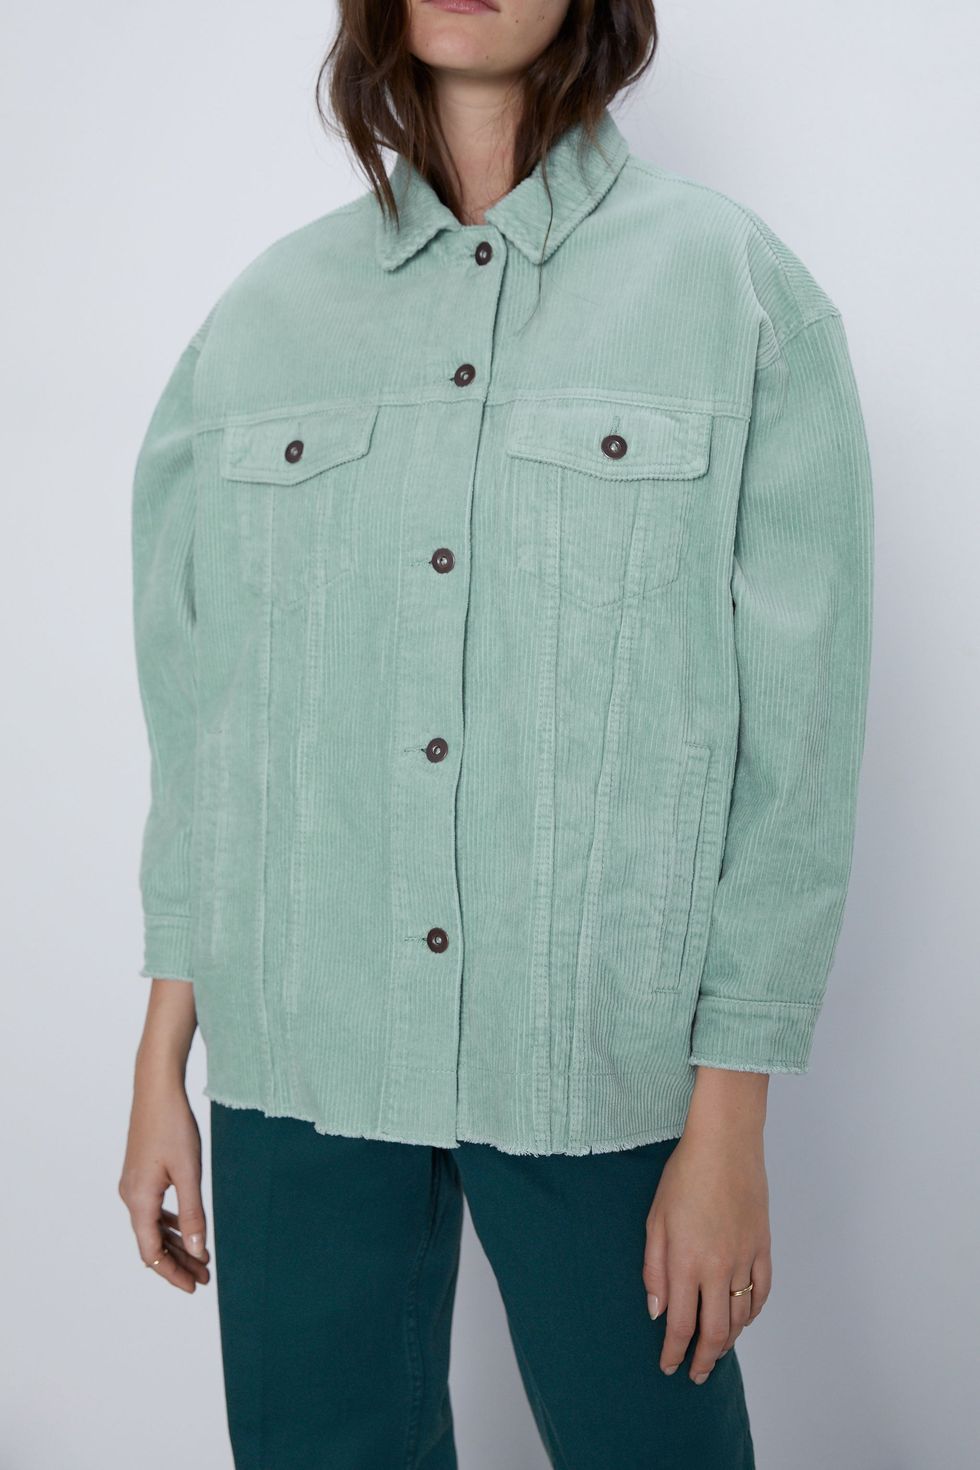 Queremos esta chaqueta de pana de Zara en todos los colores